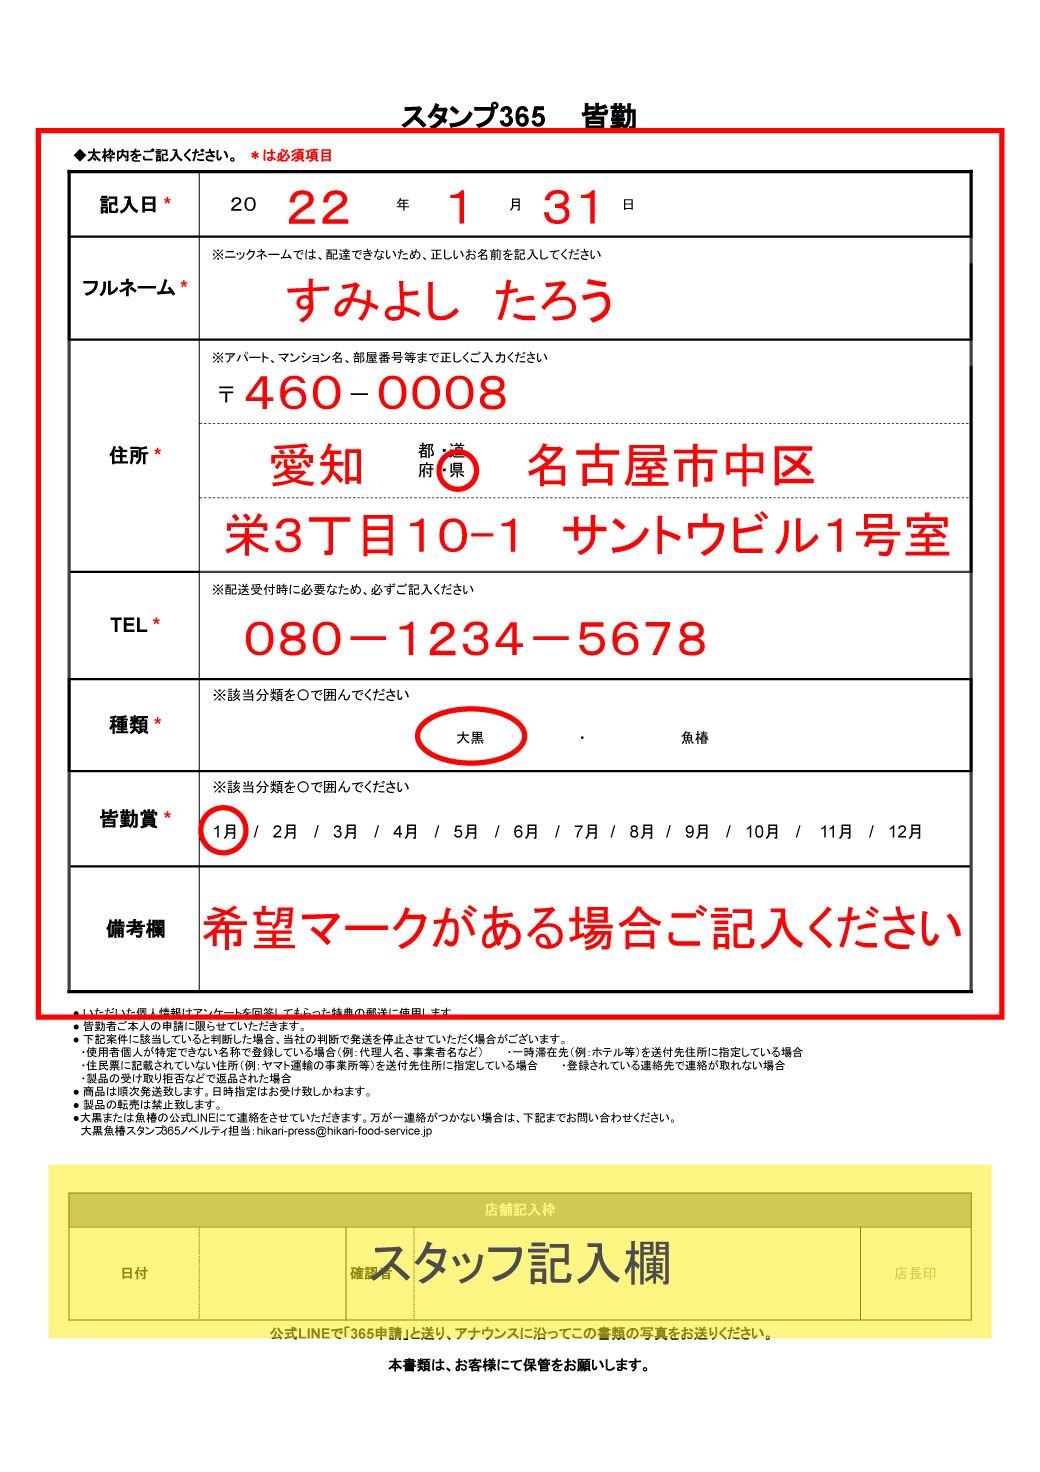 スタンプ365 ノベルティ申請方法 12/28改正分追記 – Miit（ミート）